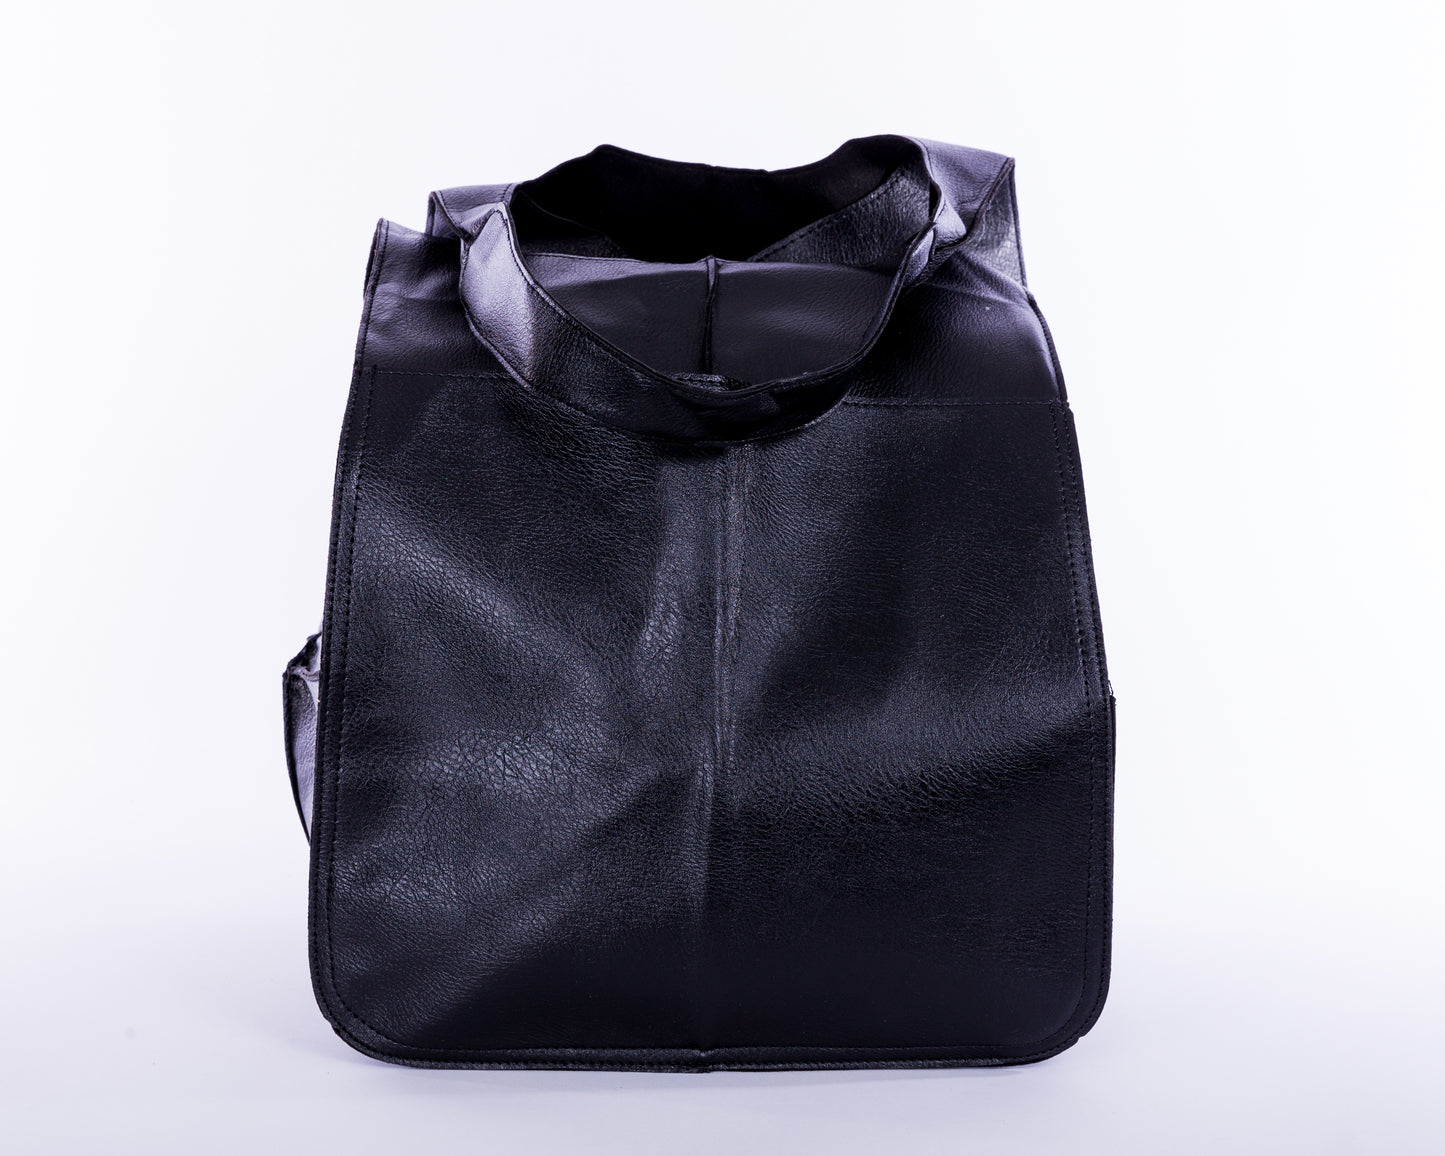 The Yoko Bag